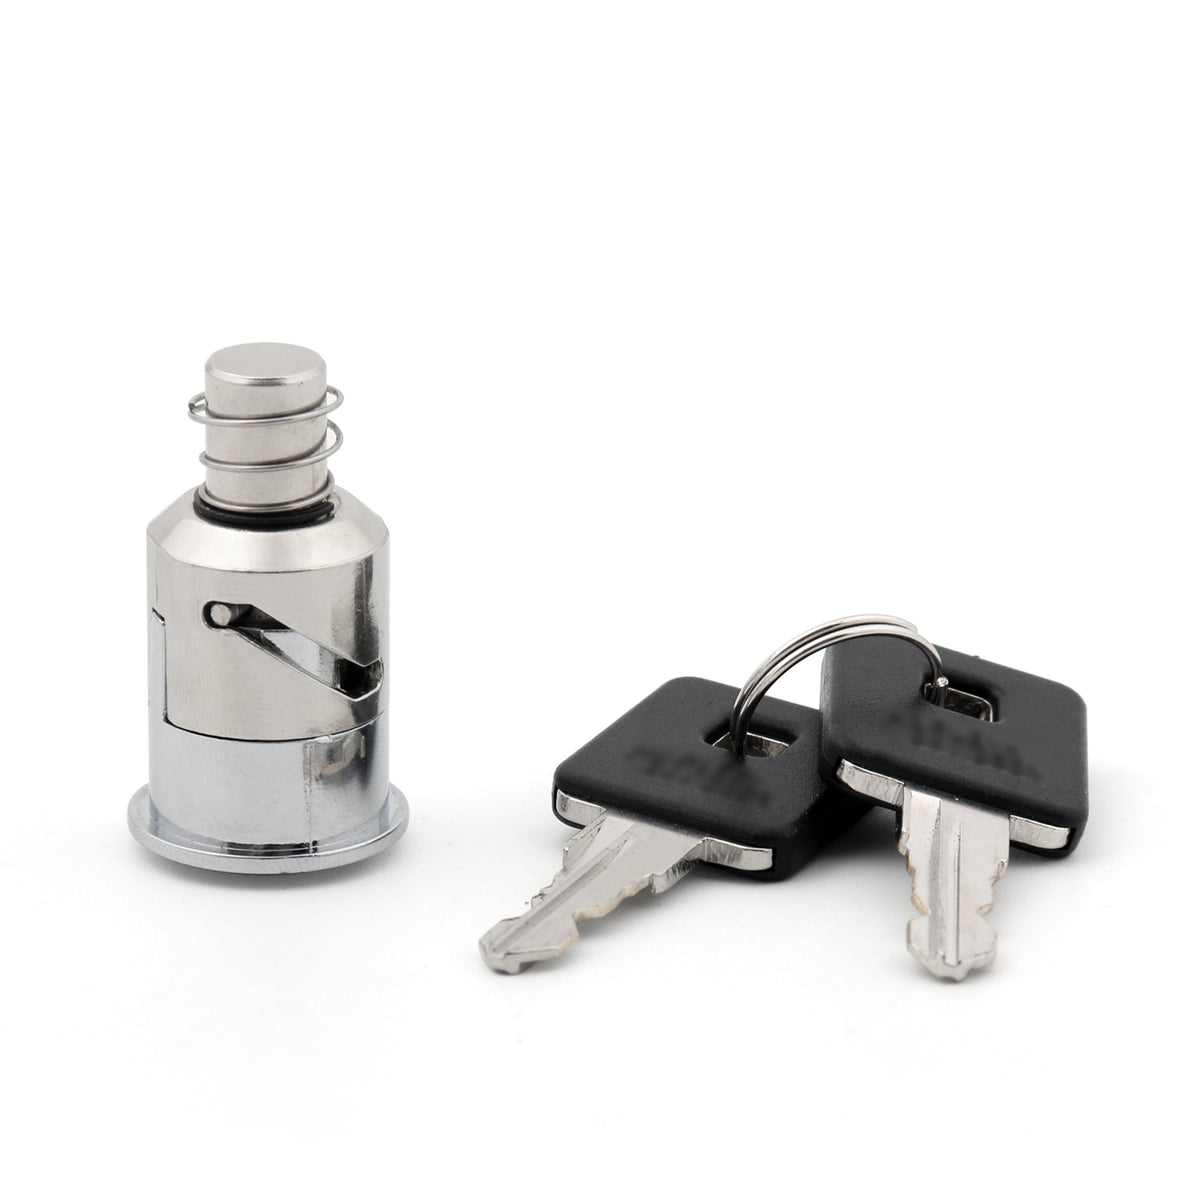 Pull Start Lock mit 2 Schlüsseln für Harley Sportster XL 883N und XL 1200N Modelle